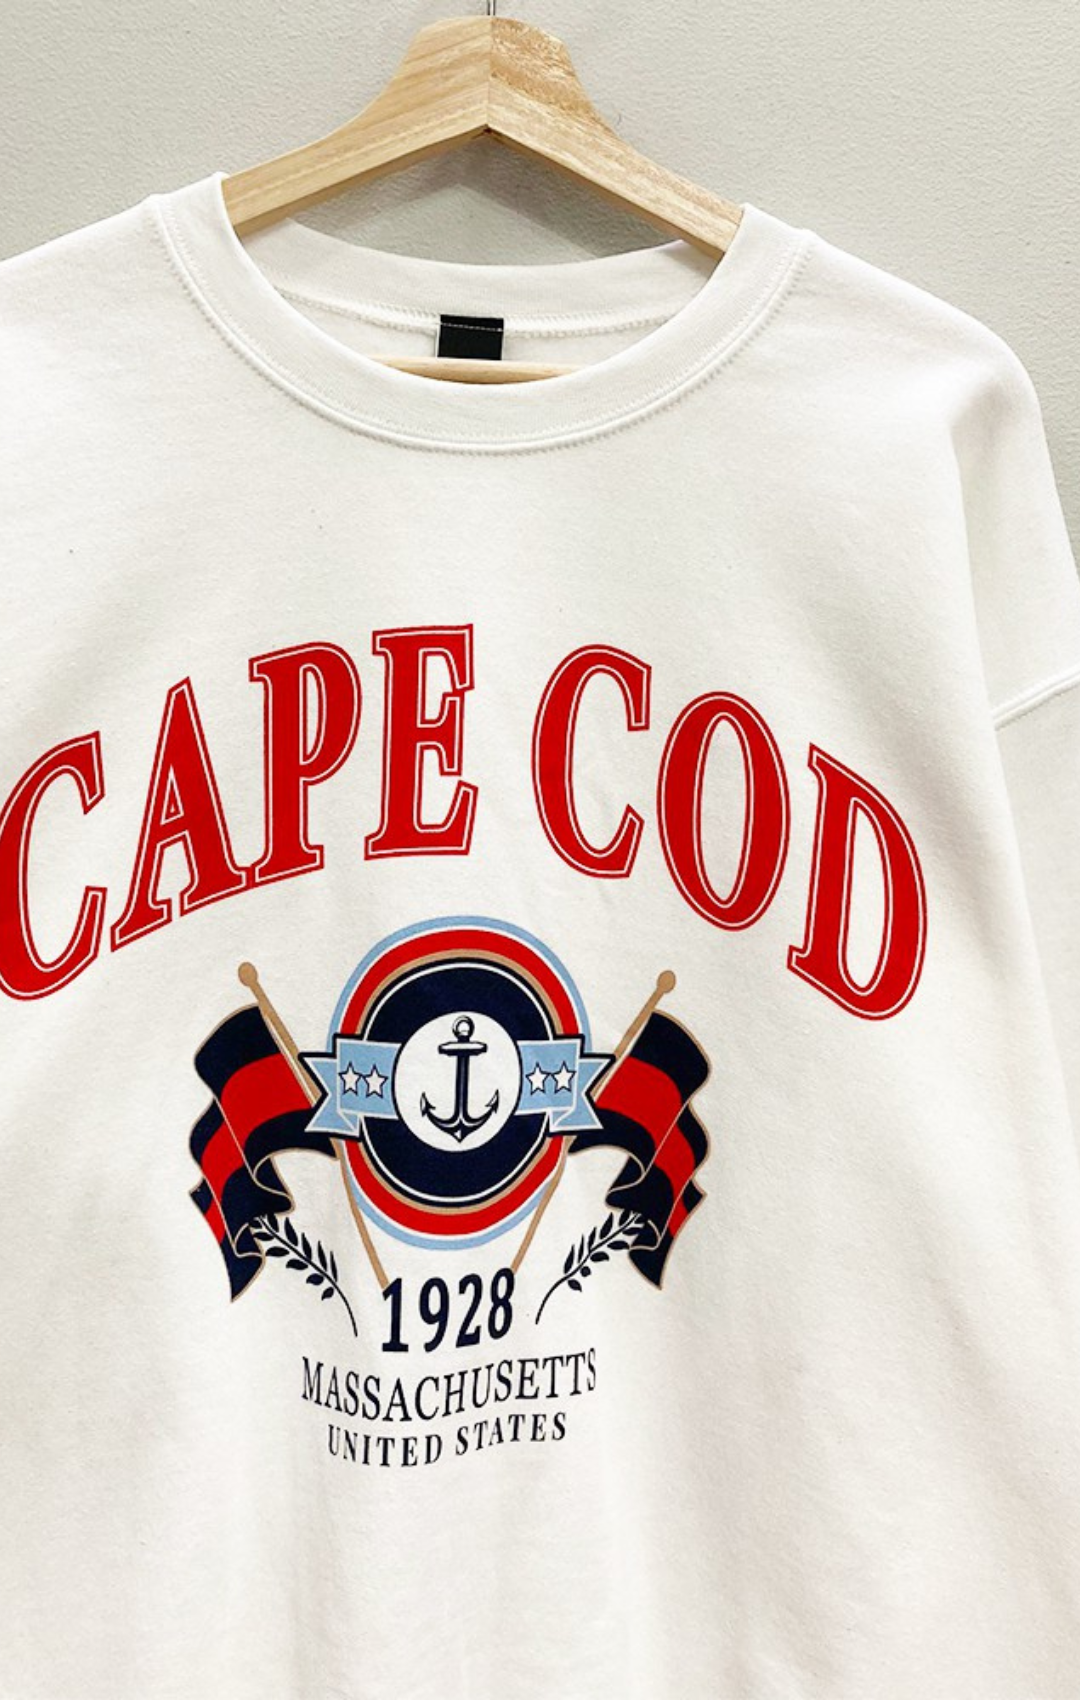 Cape Cod Sweatshirt